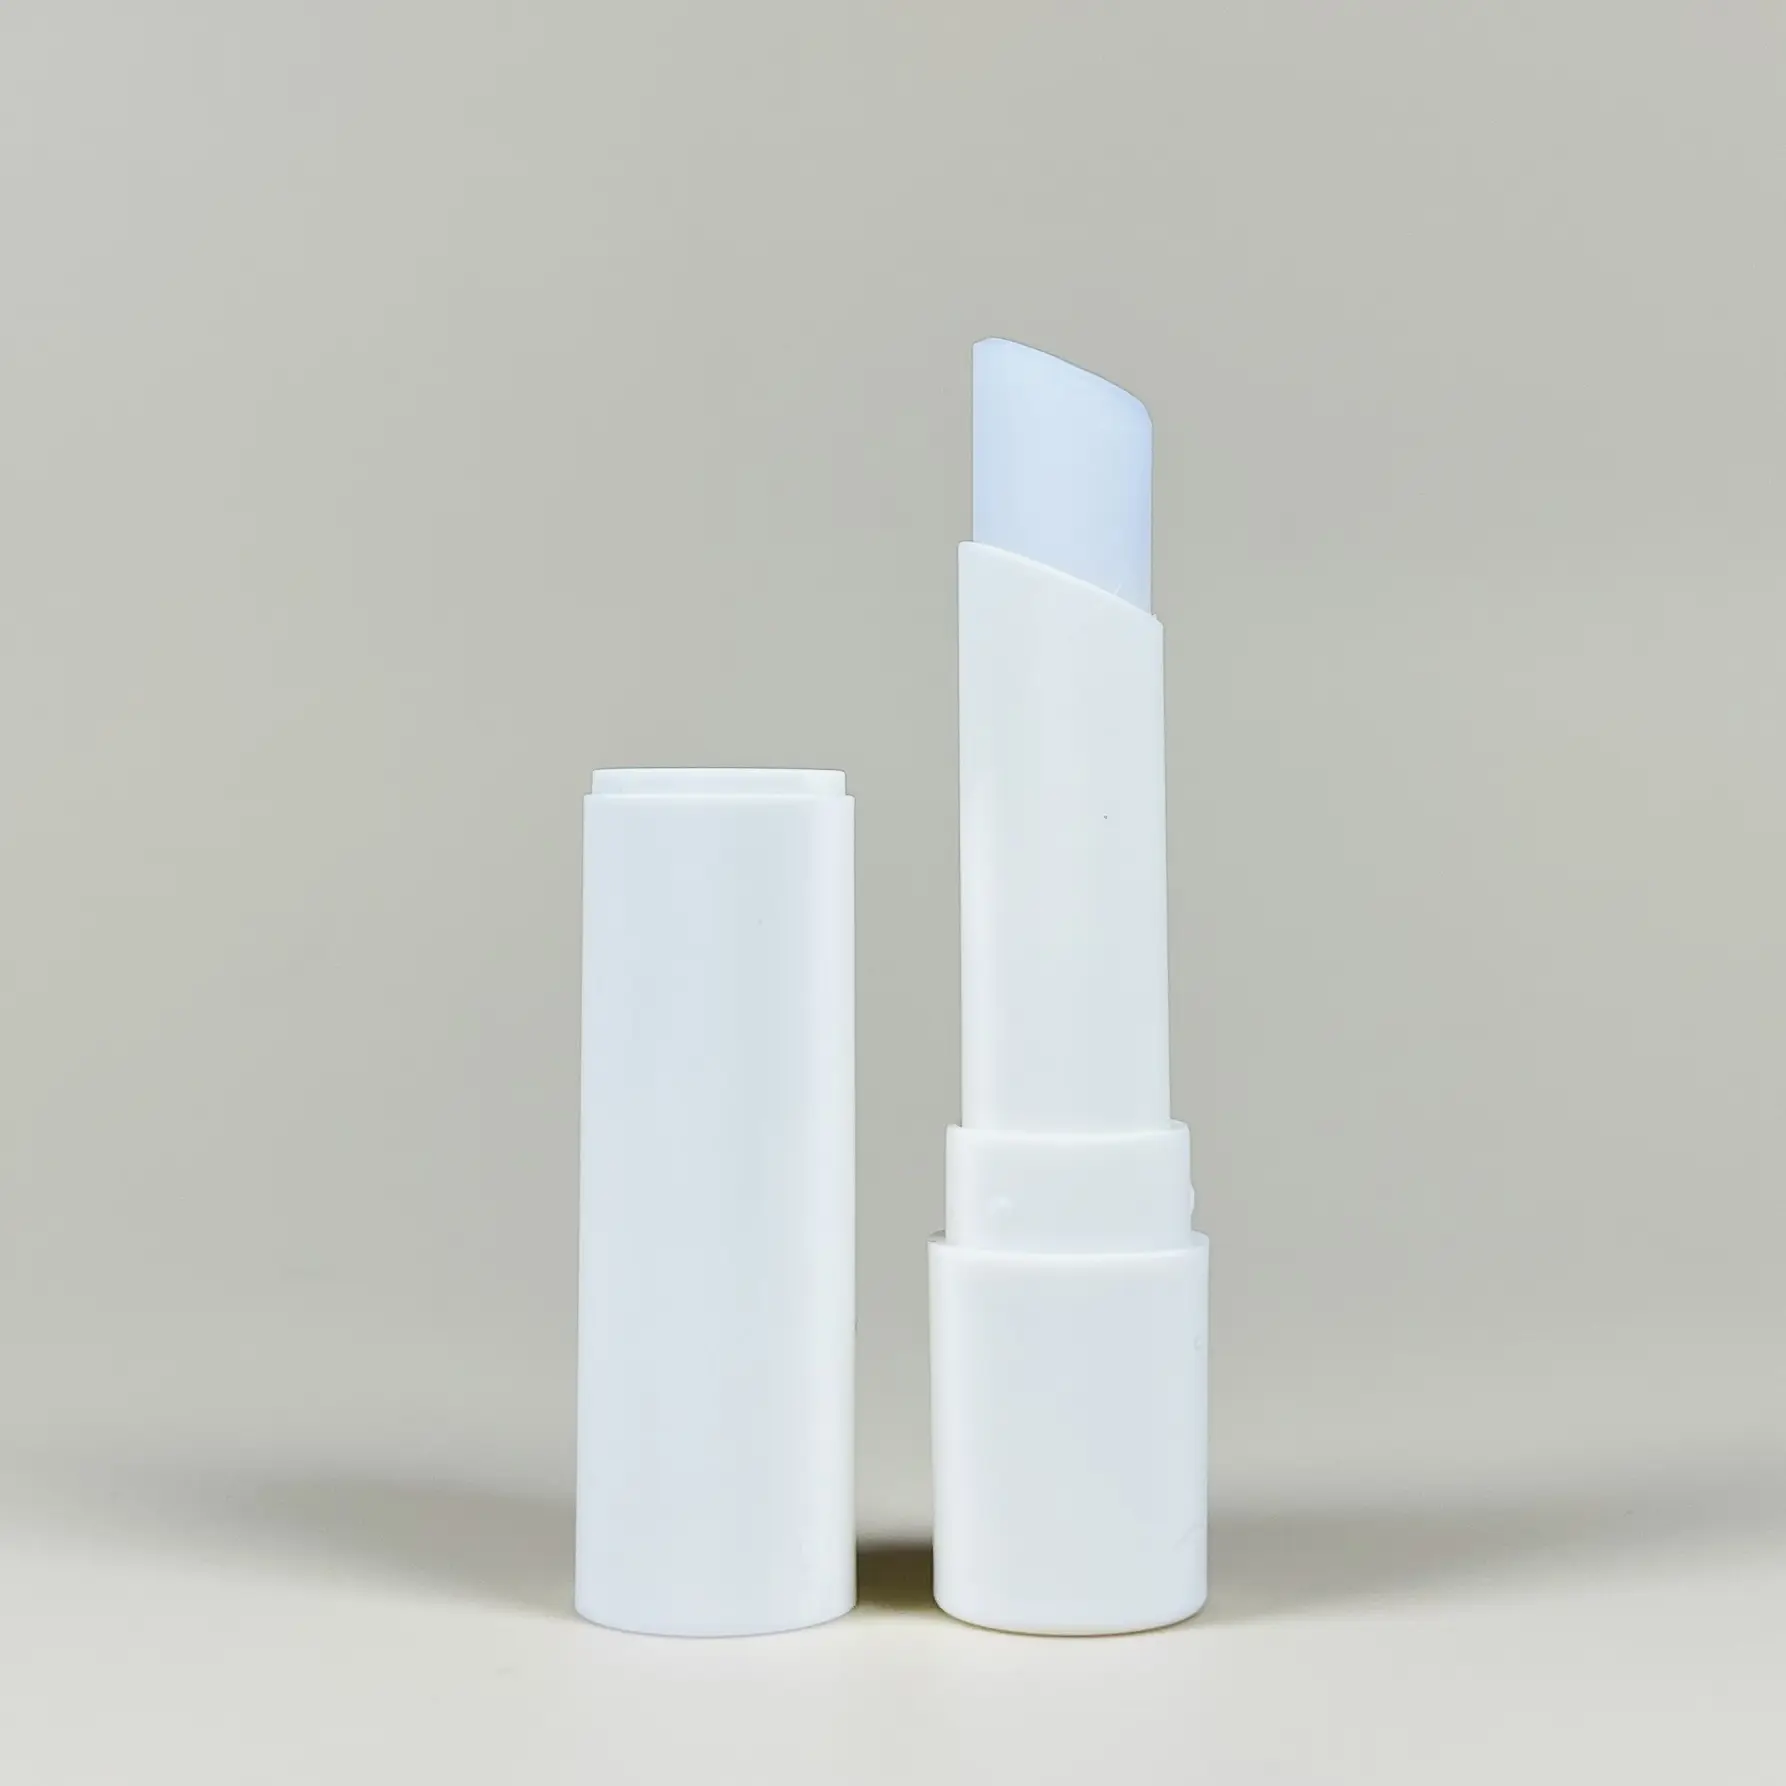 New mùa hè mỹ phẩm tự nhiên Lip Balm Stick Kem Tinted Lip Balm nhãn hiệu riêng